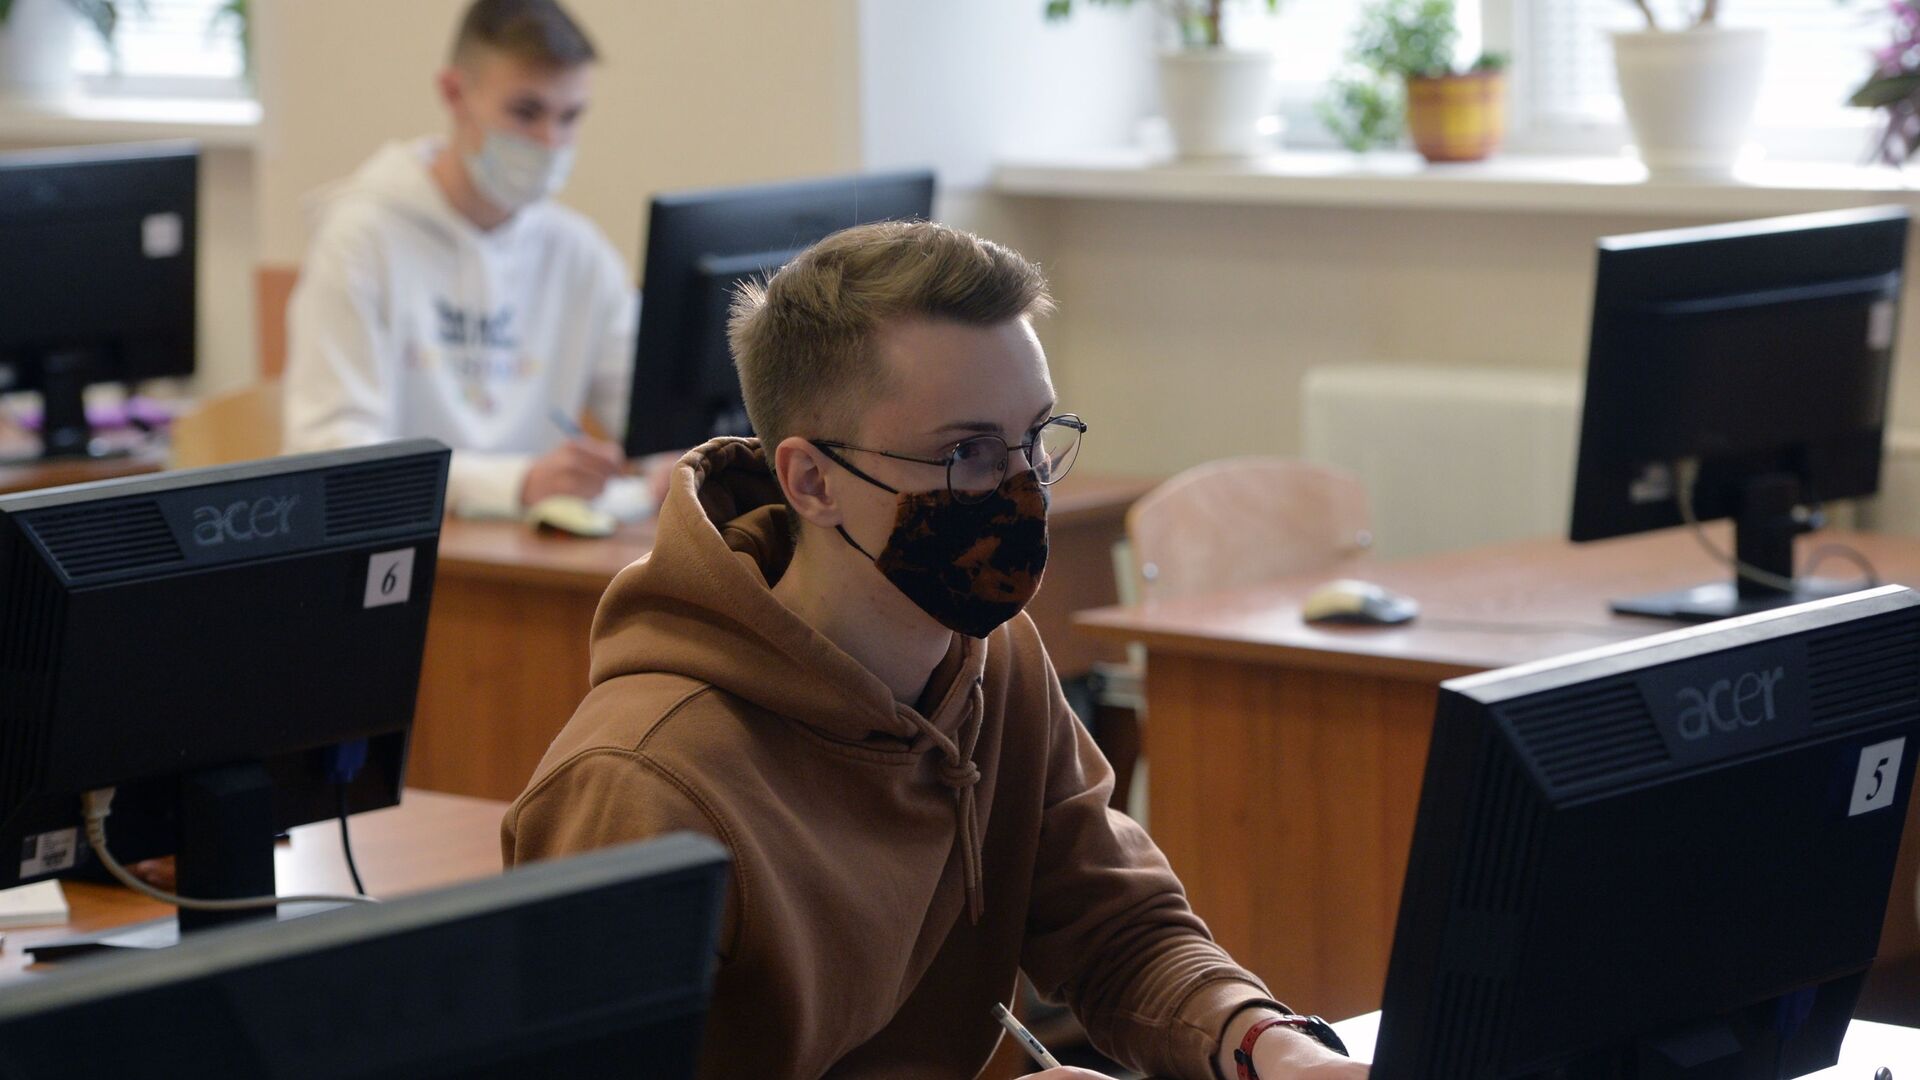 Студенты в защитных масках, архивное фото - Sputnik Казахстан, 1920, 04.06.2021